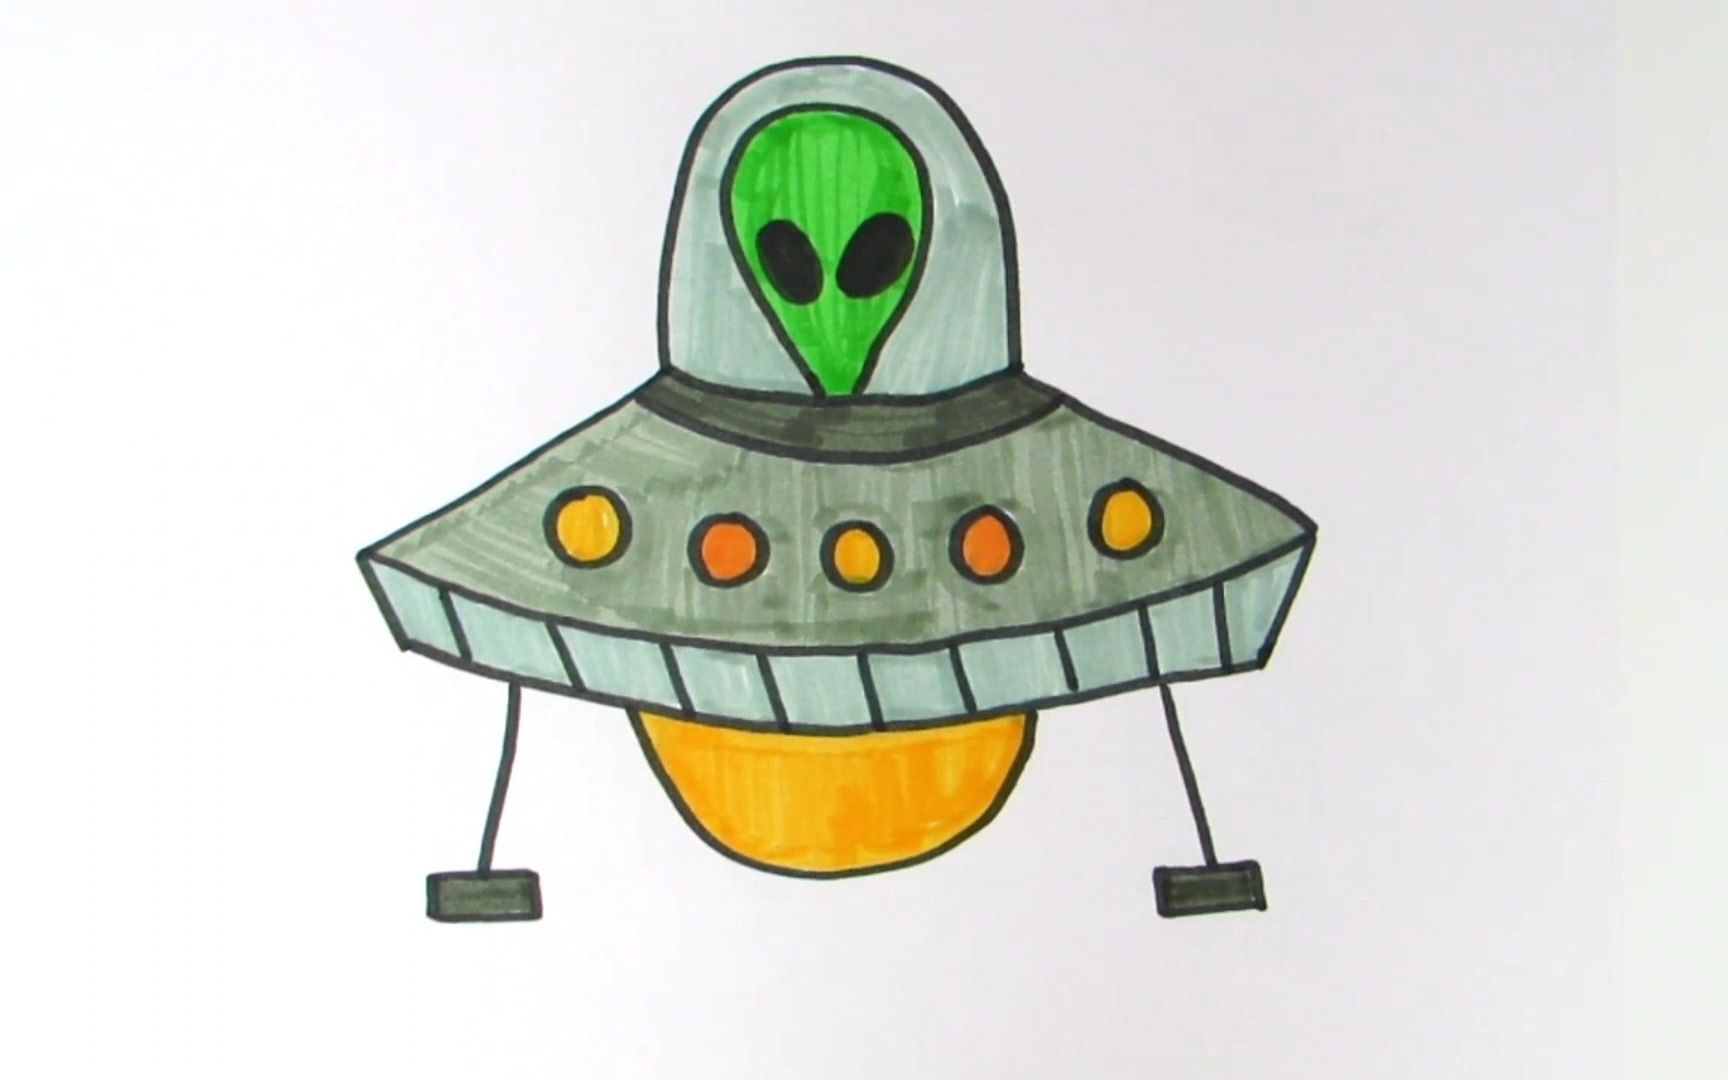 和我一起学画画,今天我们来画一架外星飞碟!